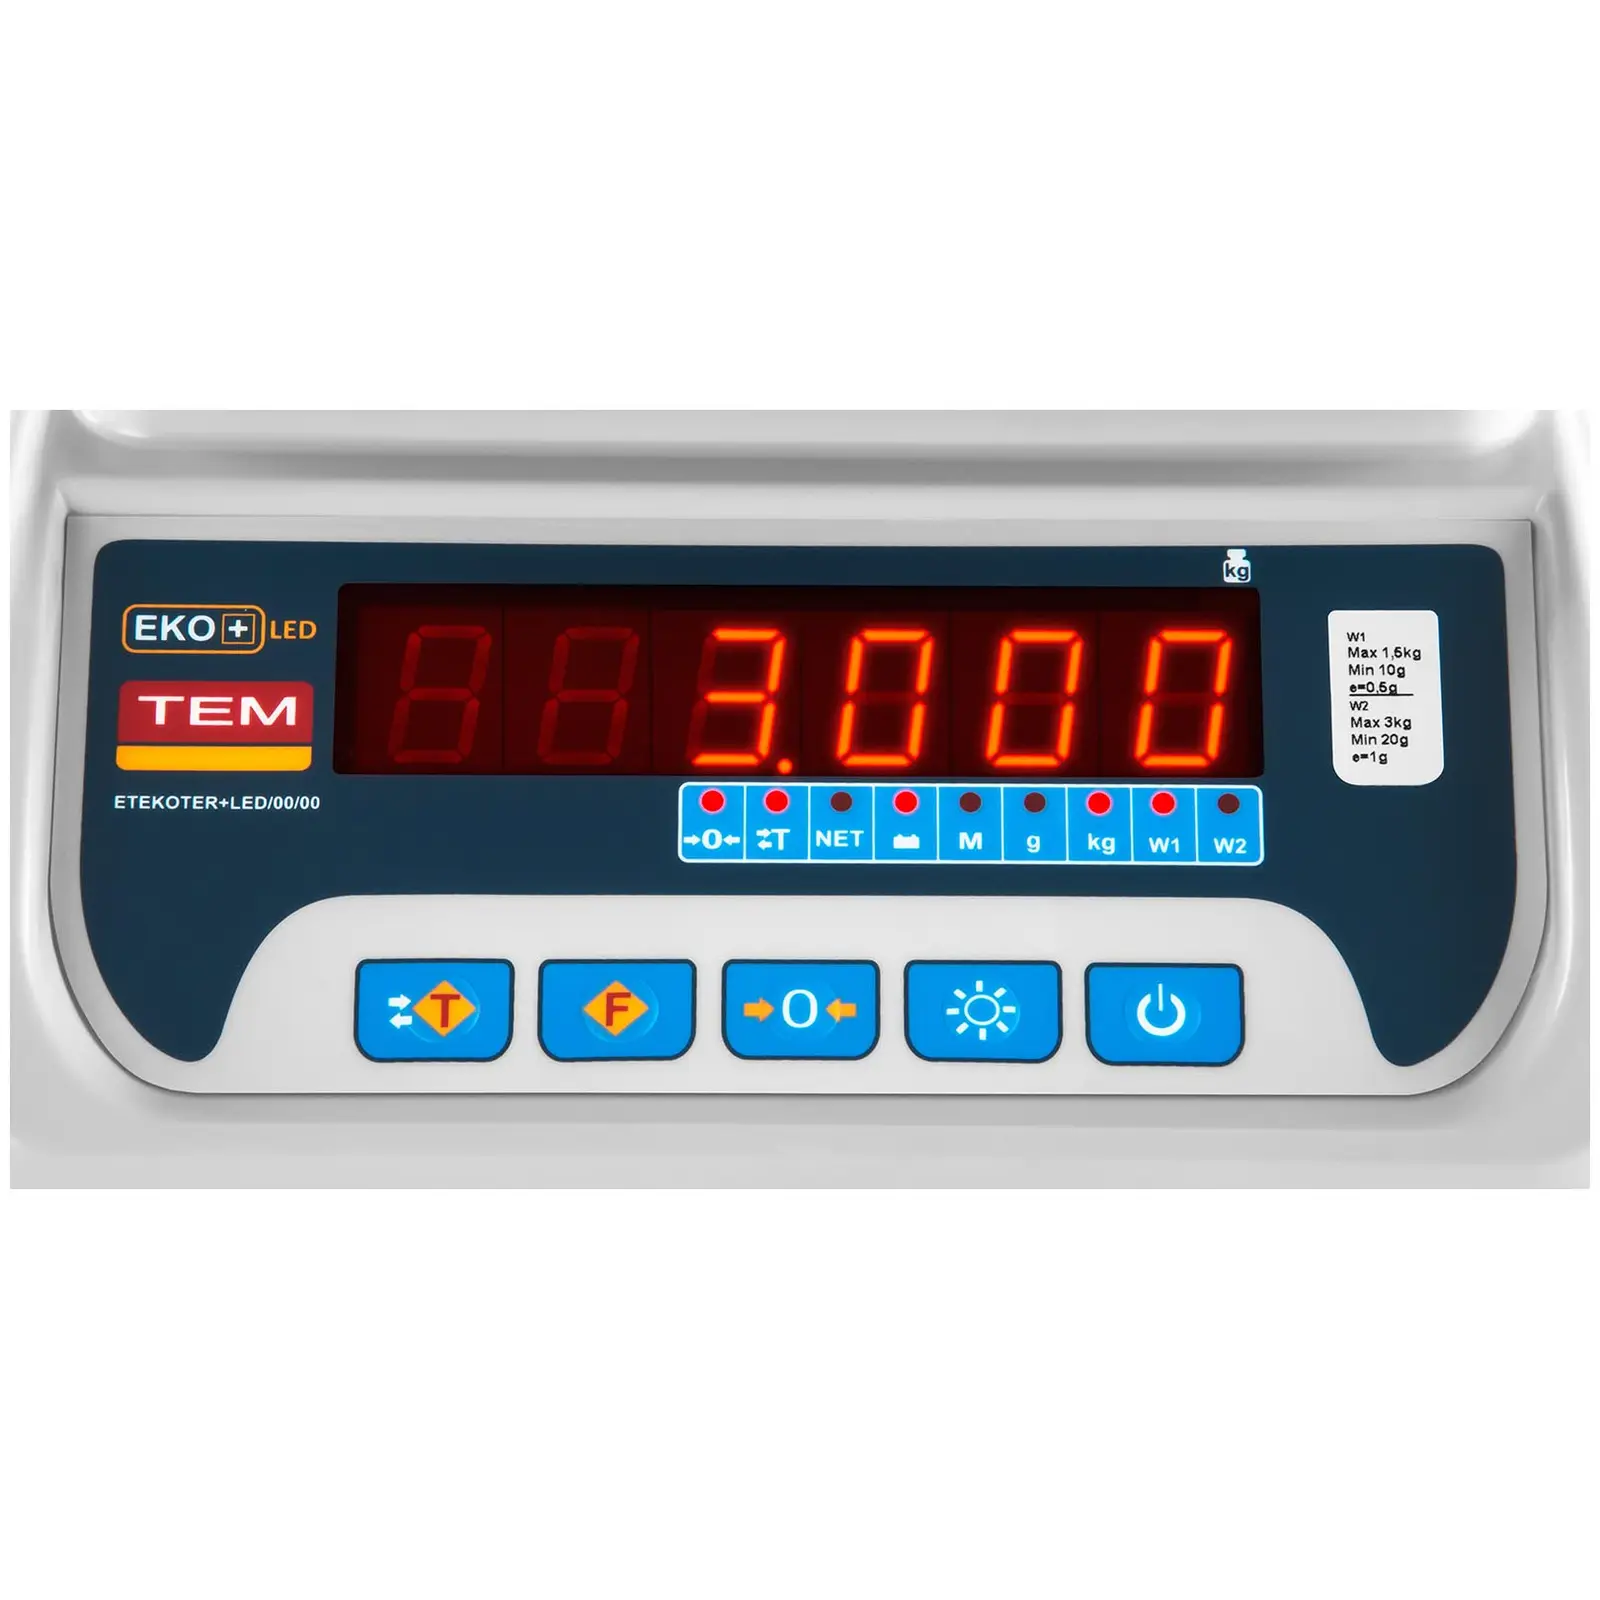 Balance poids-prix - Calibrage certifié - 1,5 kg / 0,5 g - 3 kg / 1 g - LED